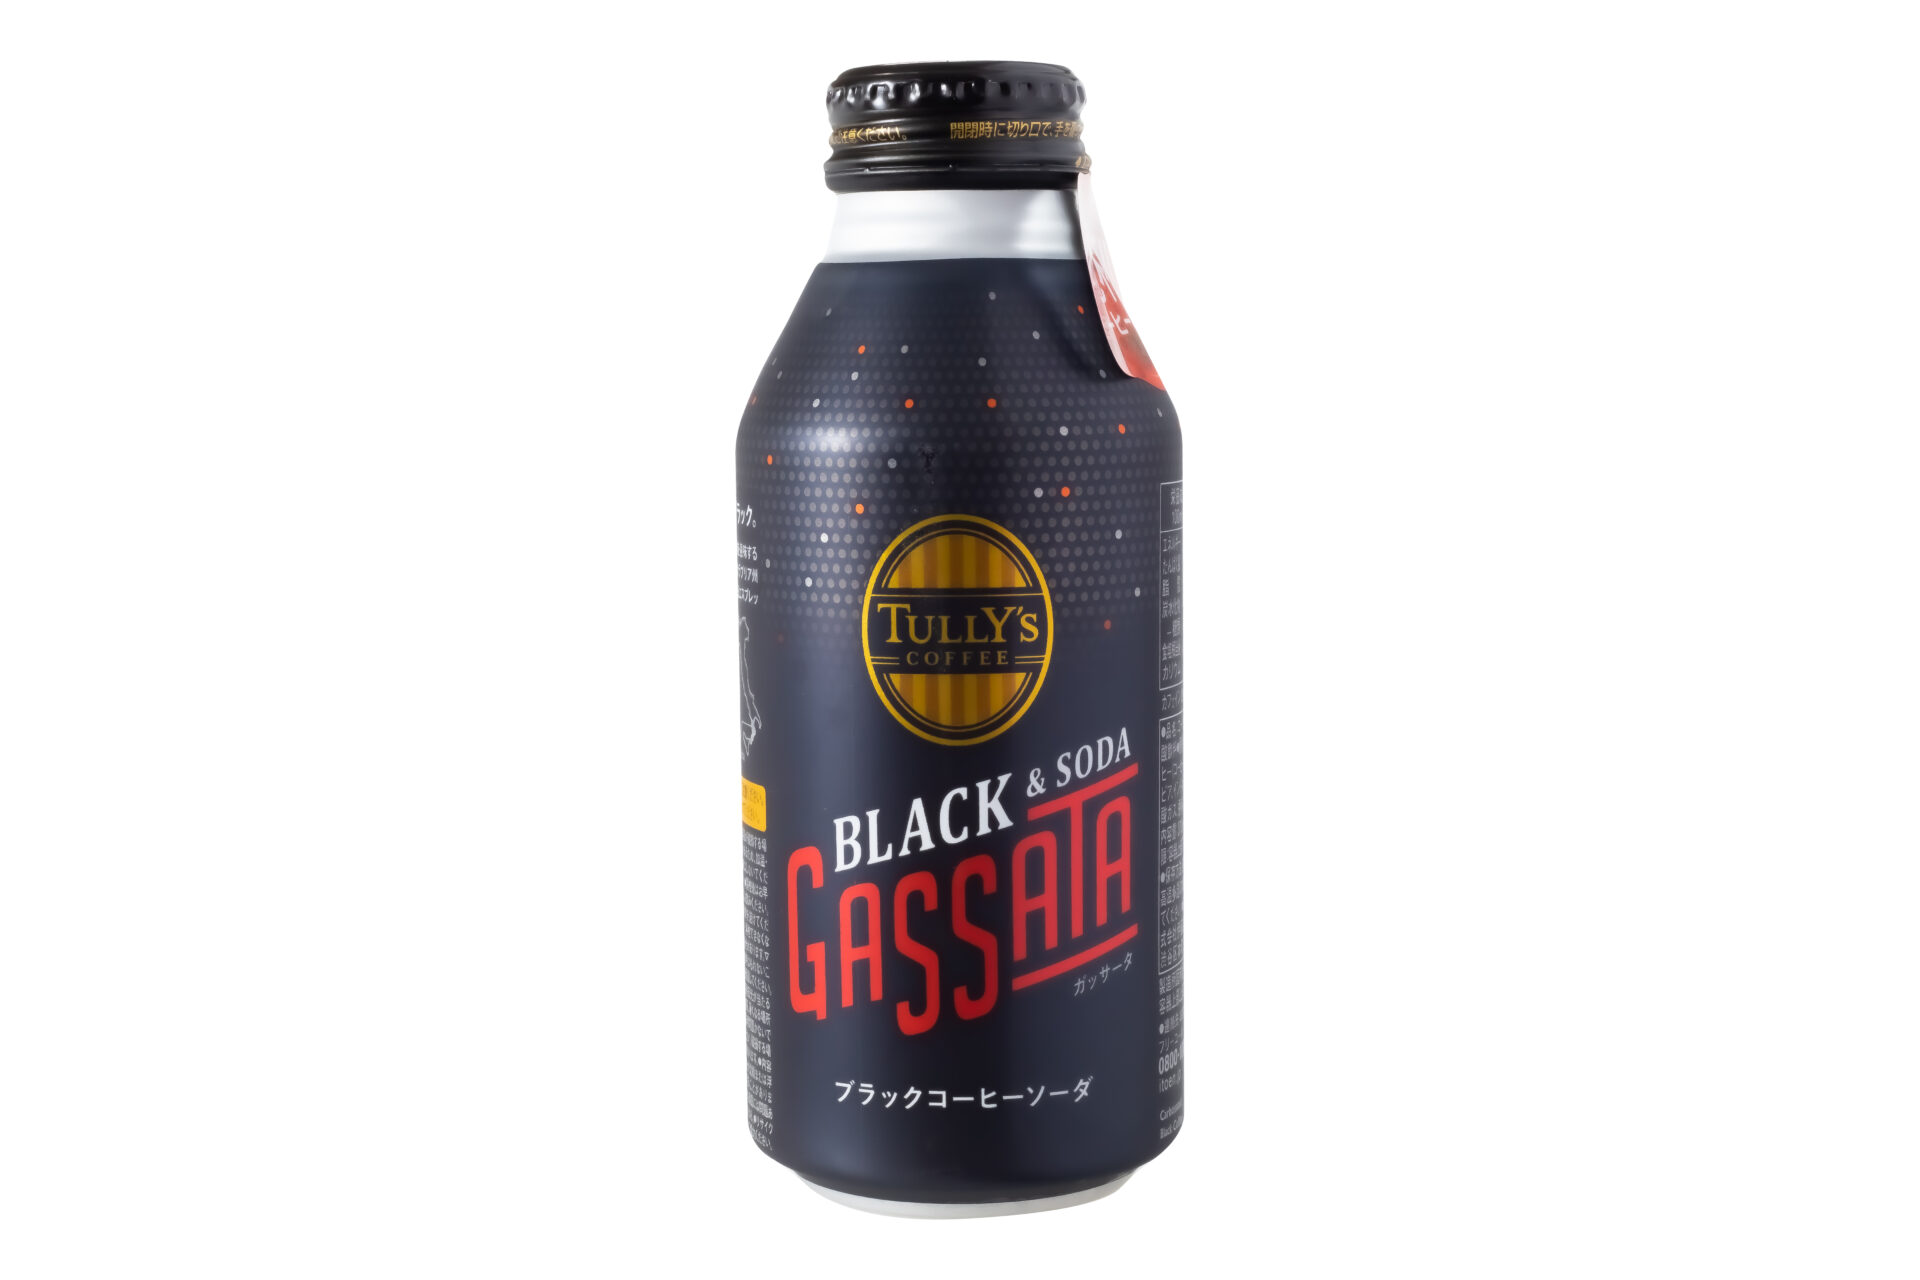 伊藤園伊藤園『TULLY’S COFFEE BLACK & SODA GASSATA ボトル缶 370ml』